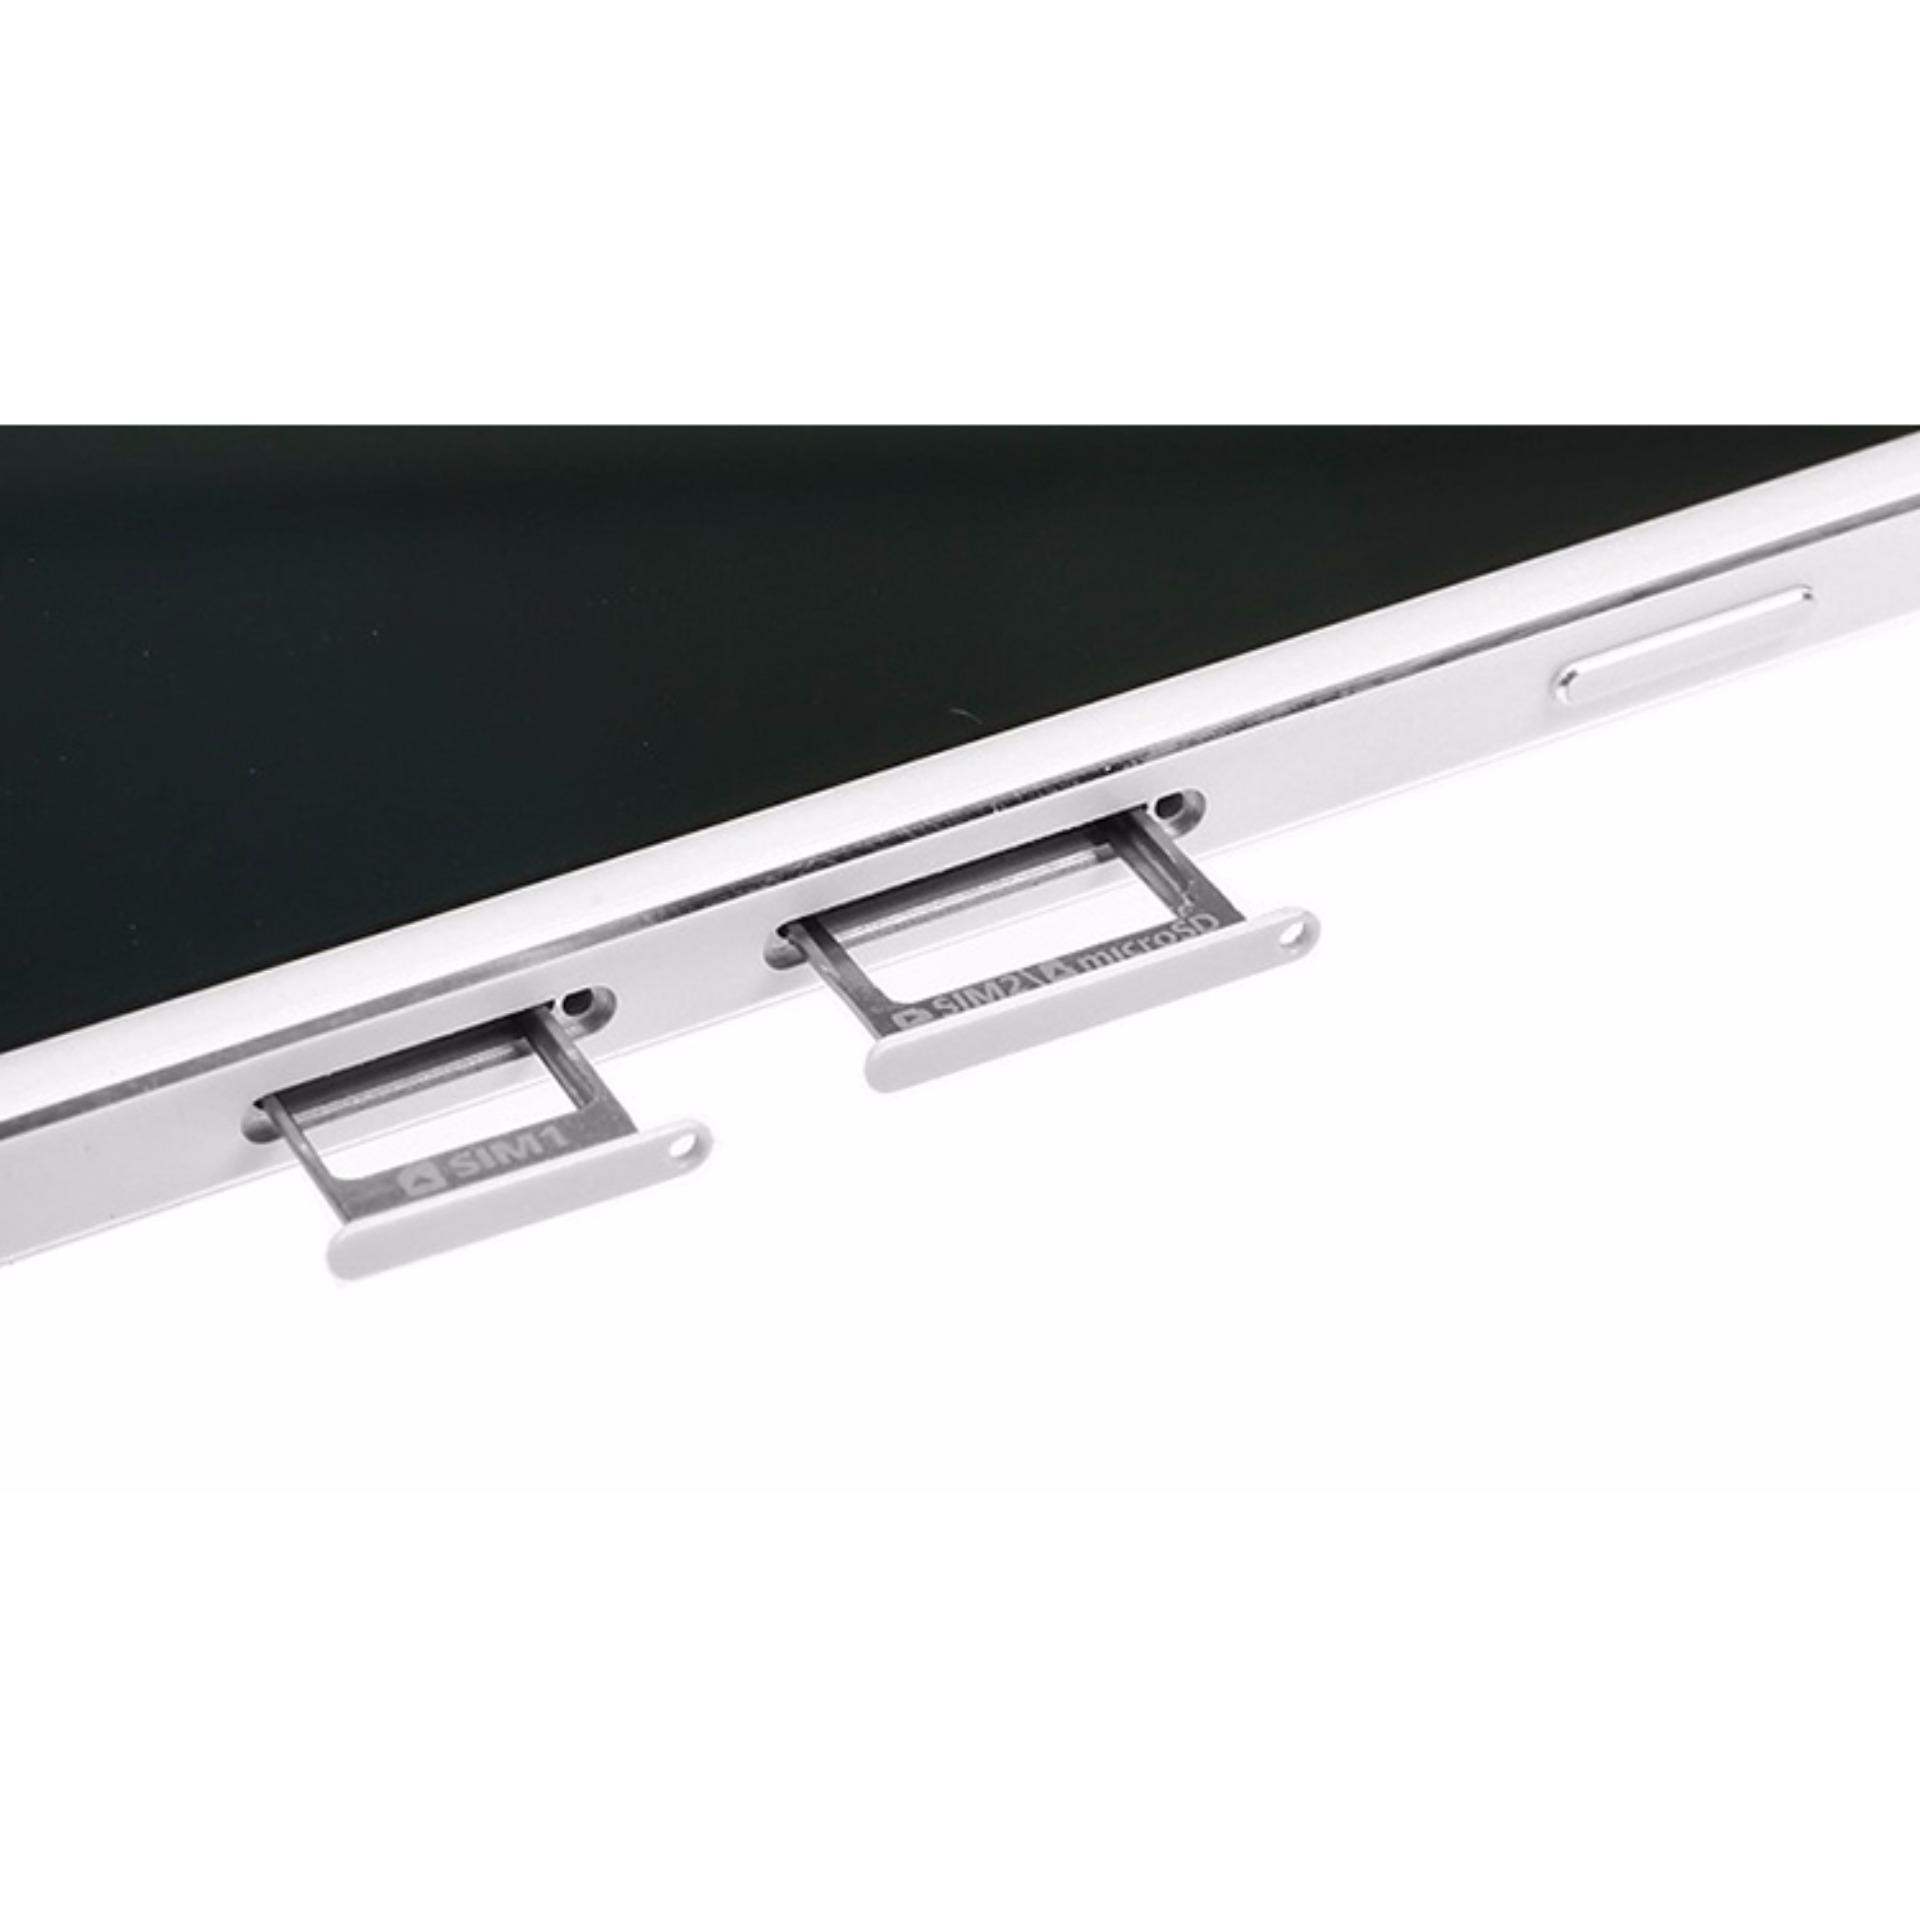 Khay sim 1 cho Galaxy A5 - Hàng nhập khẩu